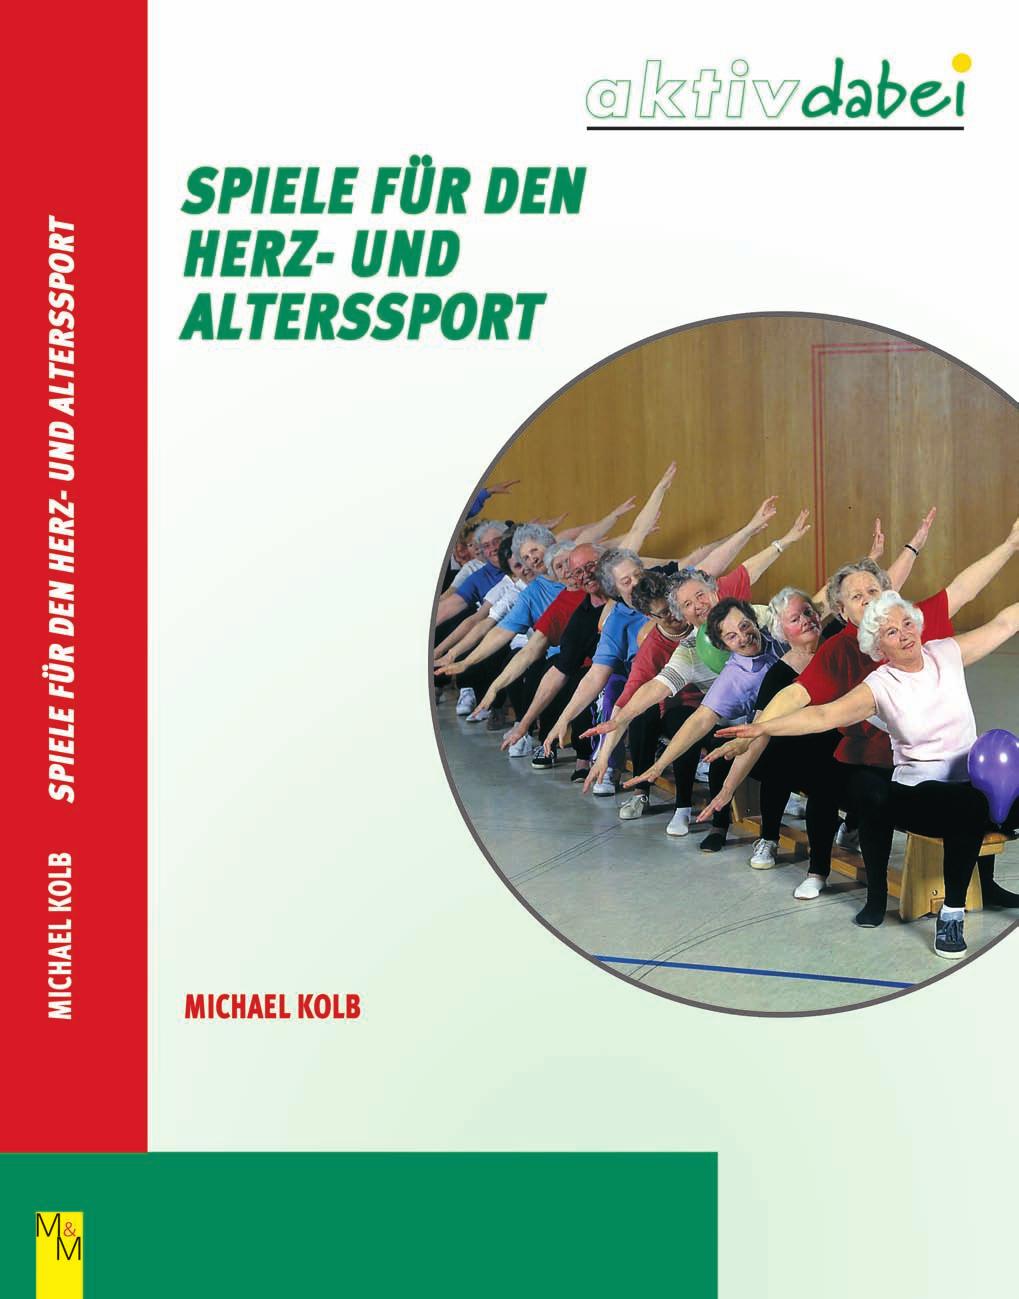 Das Buch Der Behindertensport macht Menschen mit Behinderung Mut. Ihn gibt es in knapp 1.056 Vereinen zwischen Rhein und Weser, zusammengeschlossen zum Behinderten-Sportverband NW (BSNW). 125.